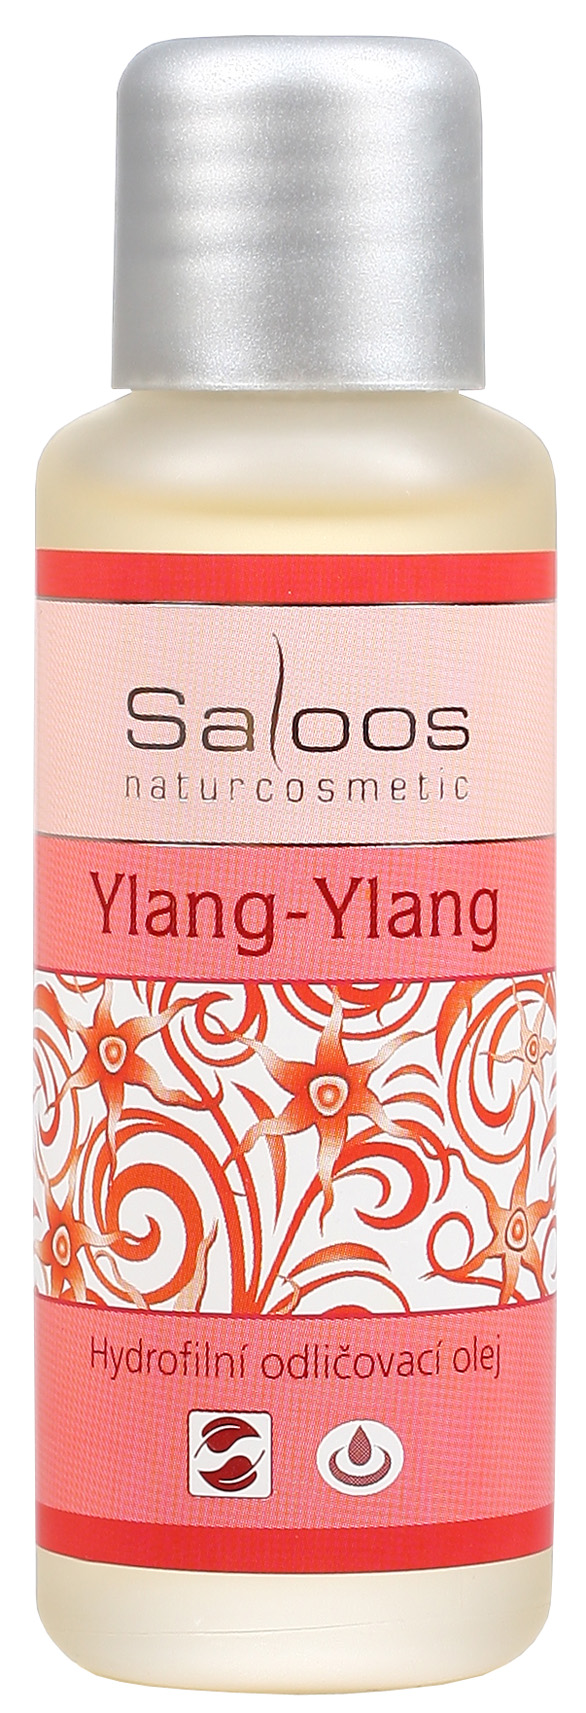 Ylang-Ylang - hydrofilný odličovací olej 50